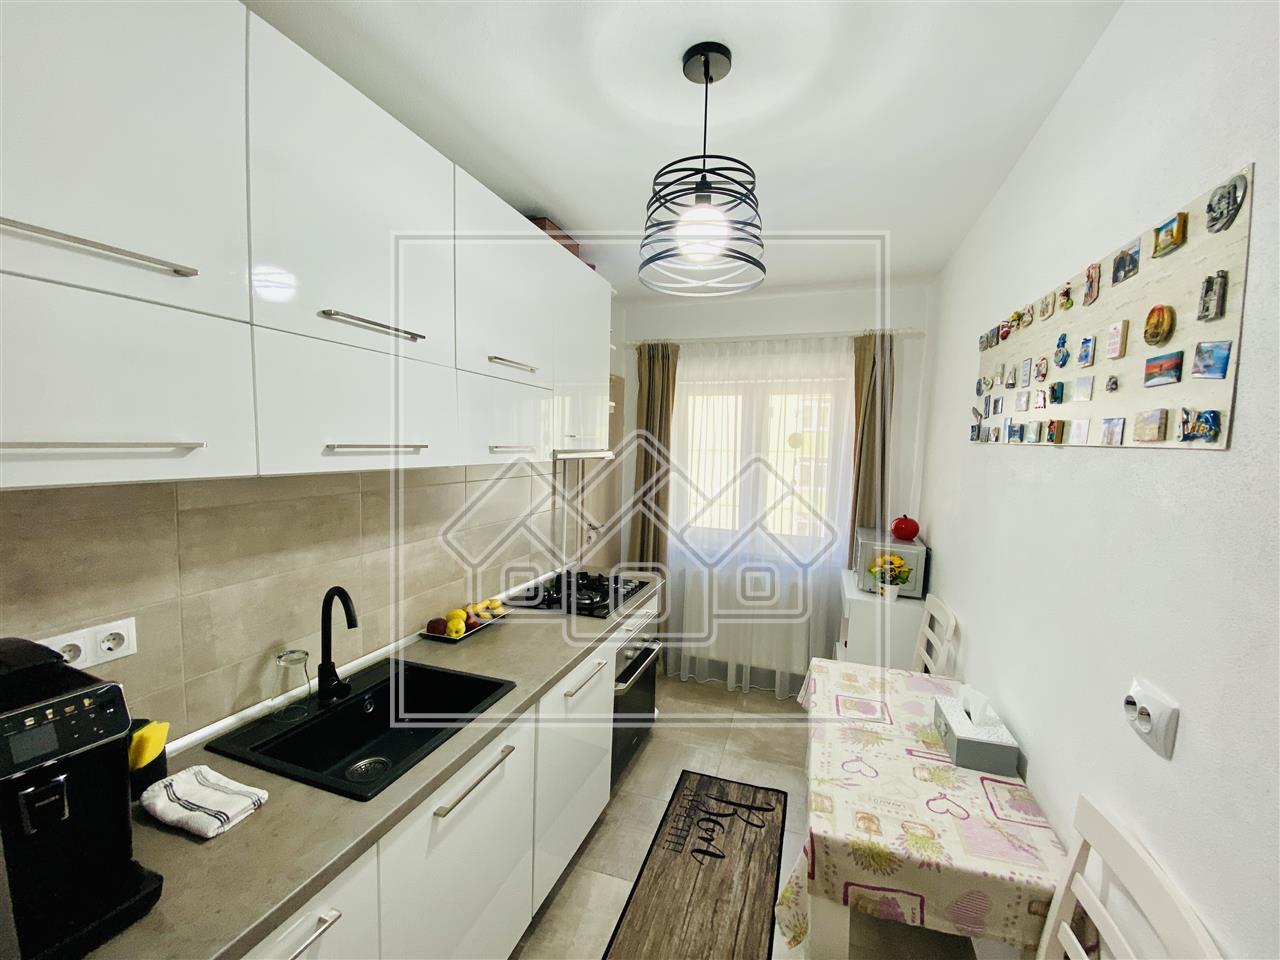 Apartament de vanzare in Sibiu - 3 camere si balcon -Zona Vasile Aaron